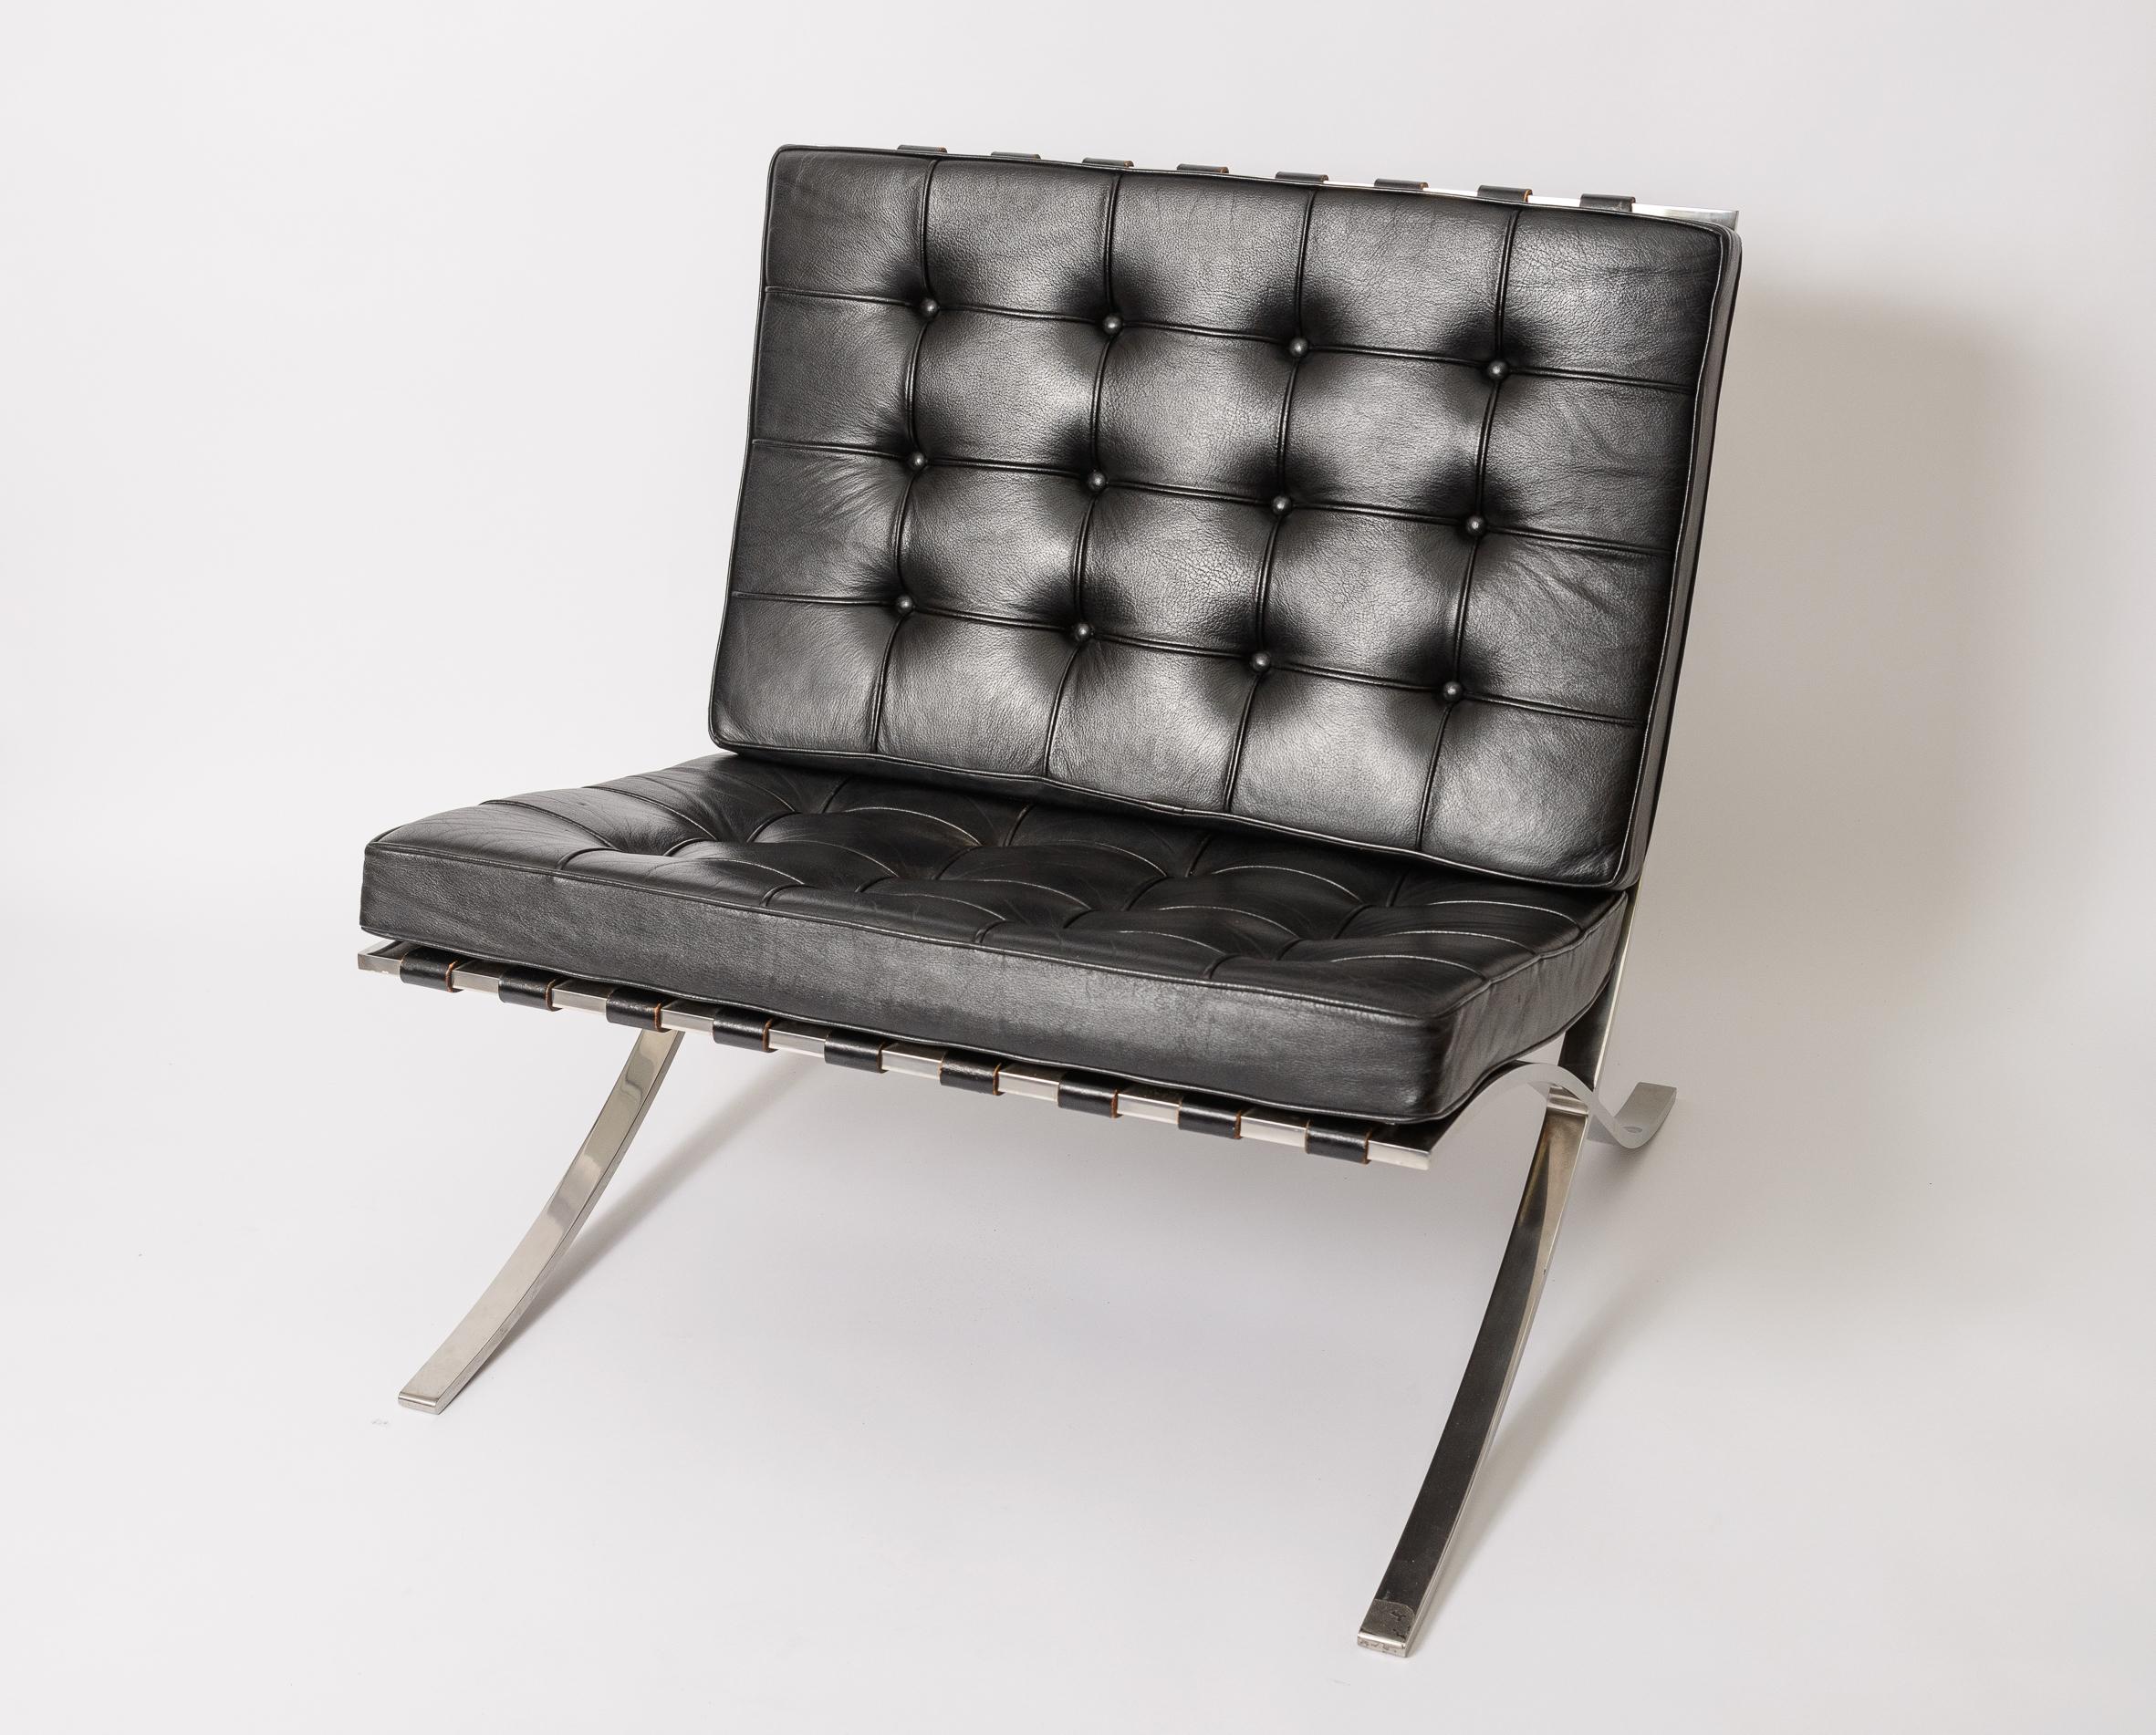 Paire de chaises Mies Van Der Rohe Barcelona d'origine
Sièges et sangles en cuir pleine fleur d'origine
Cadre en acier poli propre
Label Knoll en tissu original